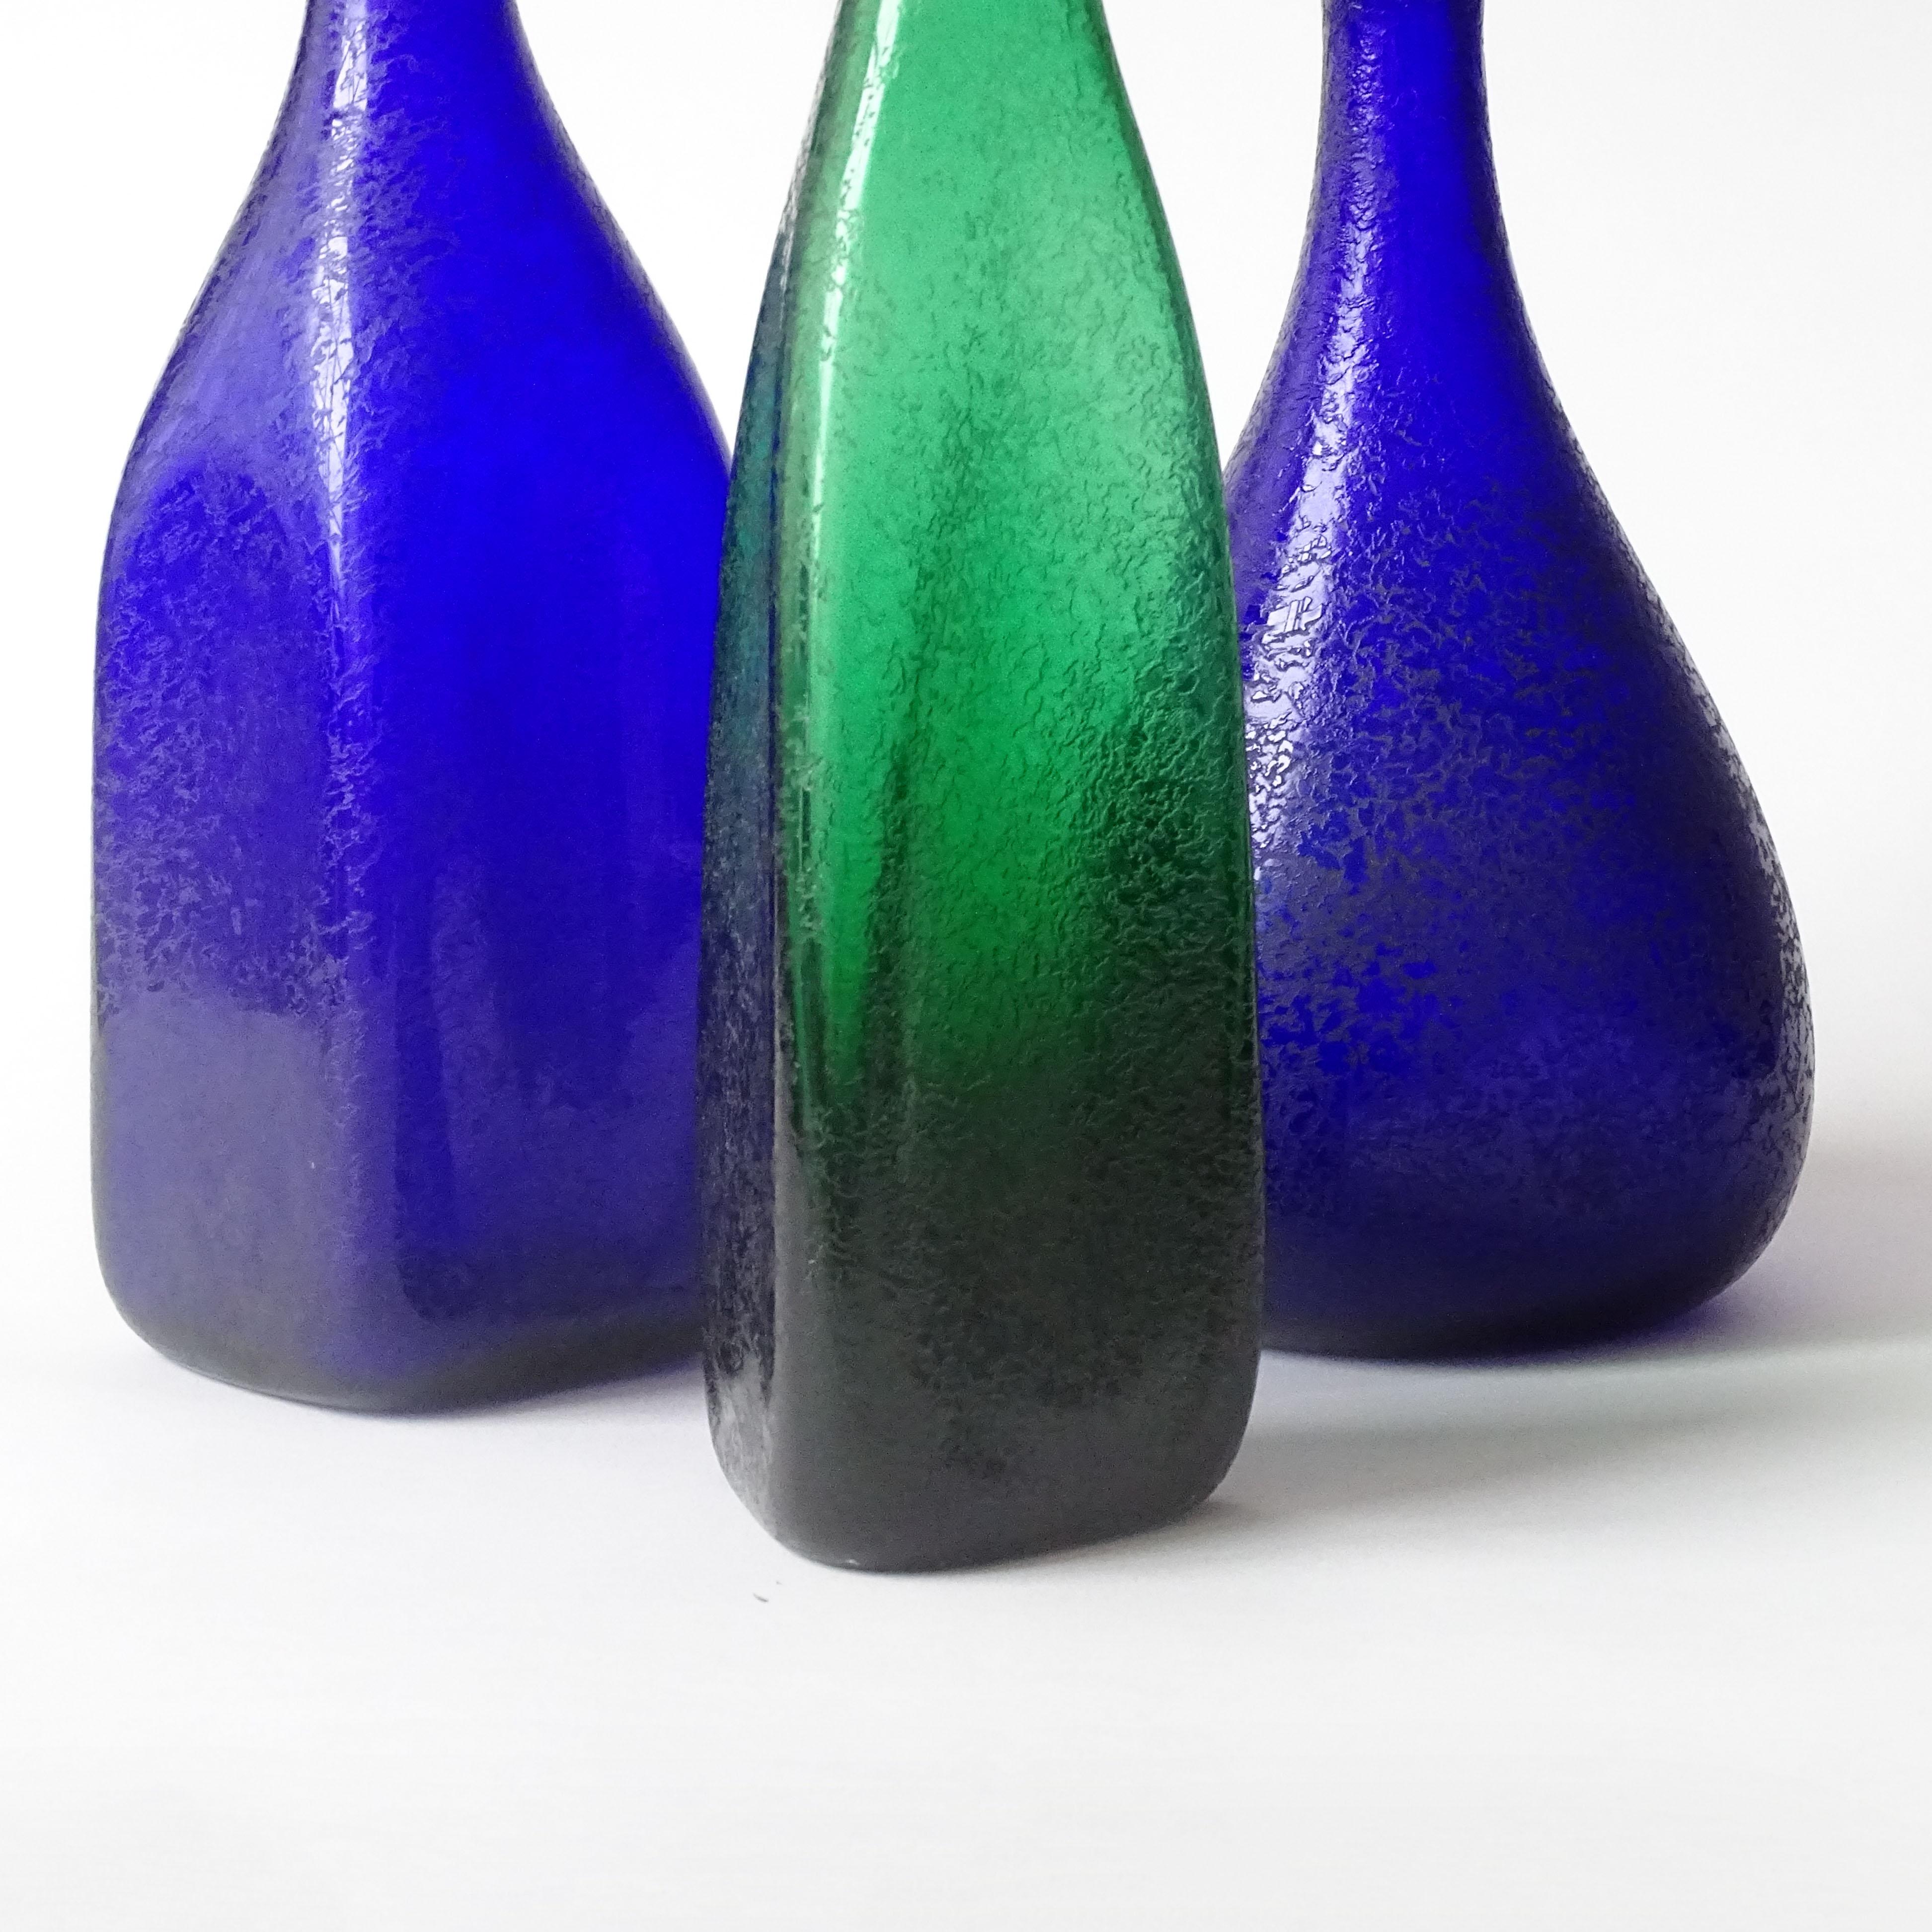 Carlo Moretti, ensemble de trois vases en verre de Murano corrodé pour Carlo Moretti.
Mesures :
44 x 9 x 9 cm
36 x 9 x 9 cm
26.5 x 13 cm
